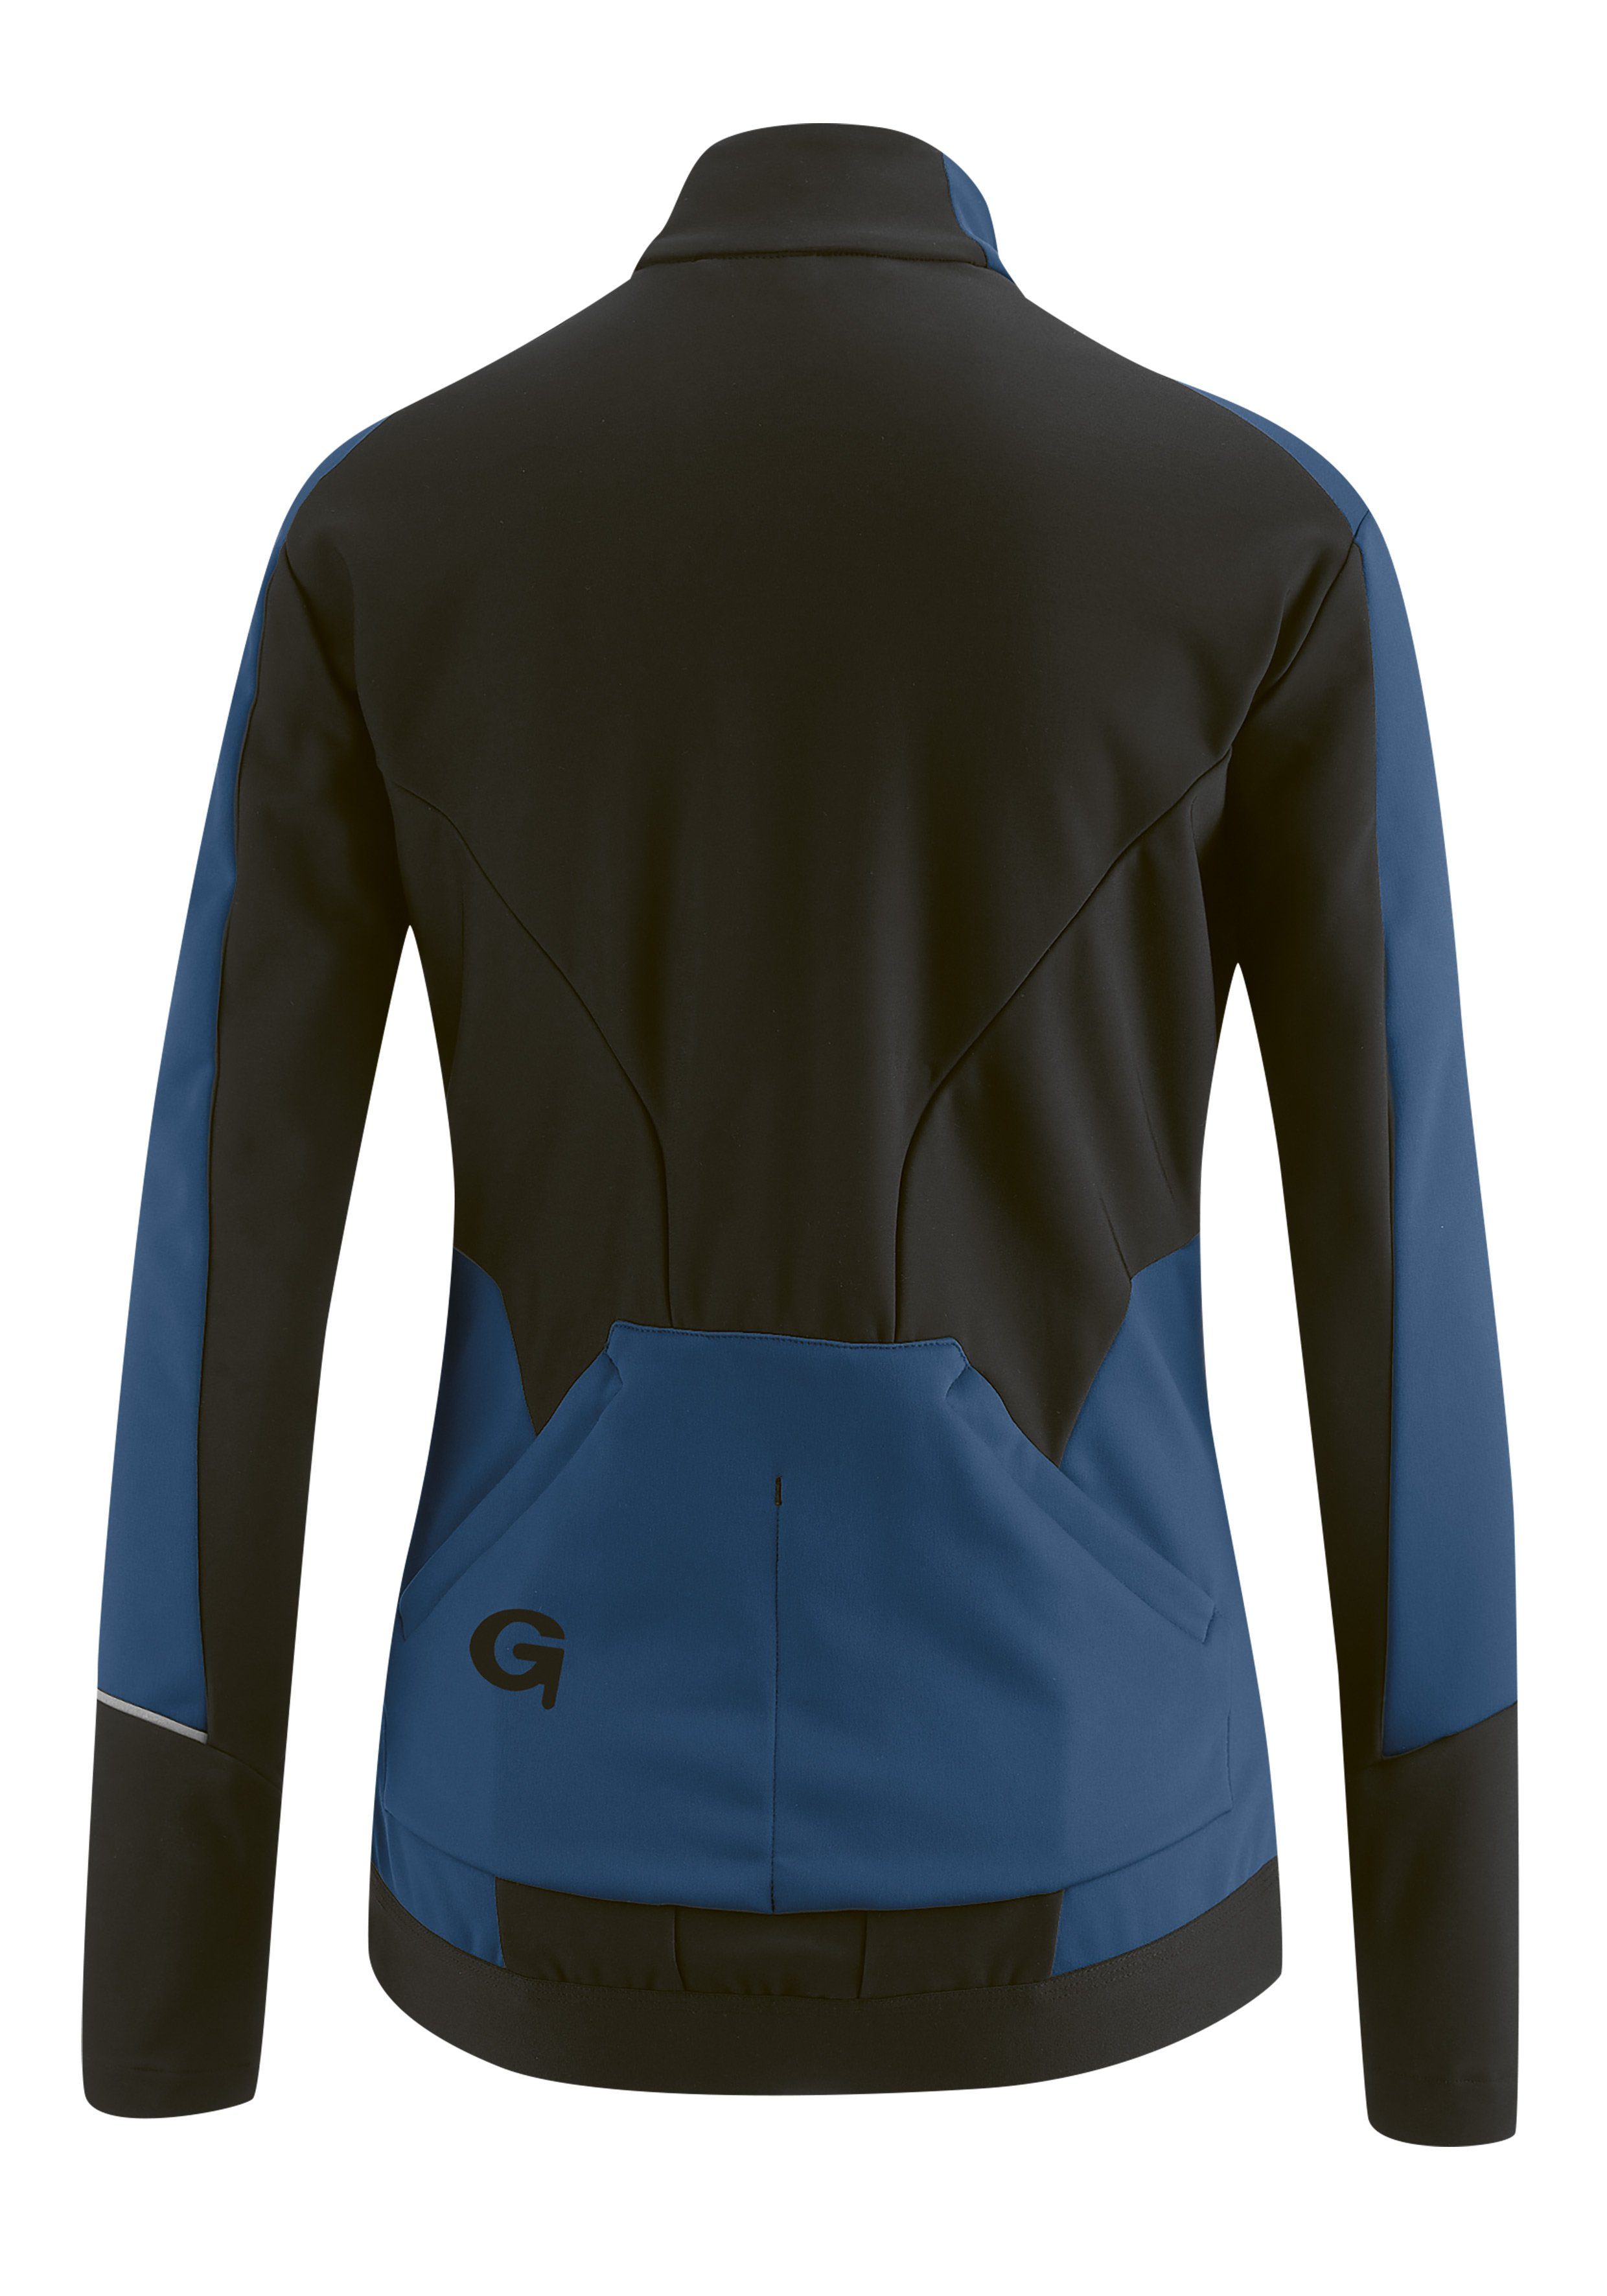 Damen Softshell-Jacke, Fahrradjacke FURIANI dunkelblau und atmungsaktiv Windjacke wasserabweisend Gonso